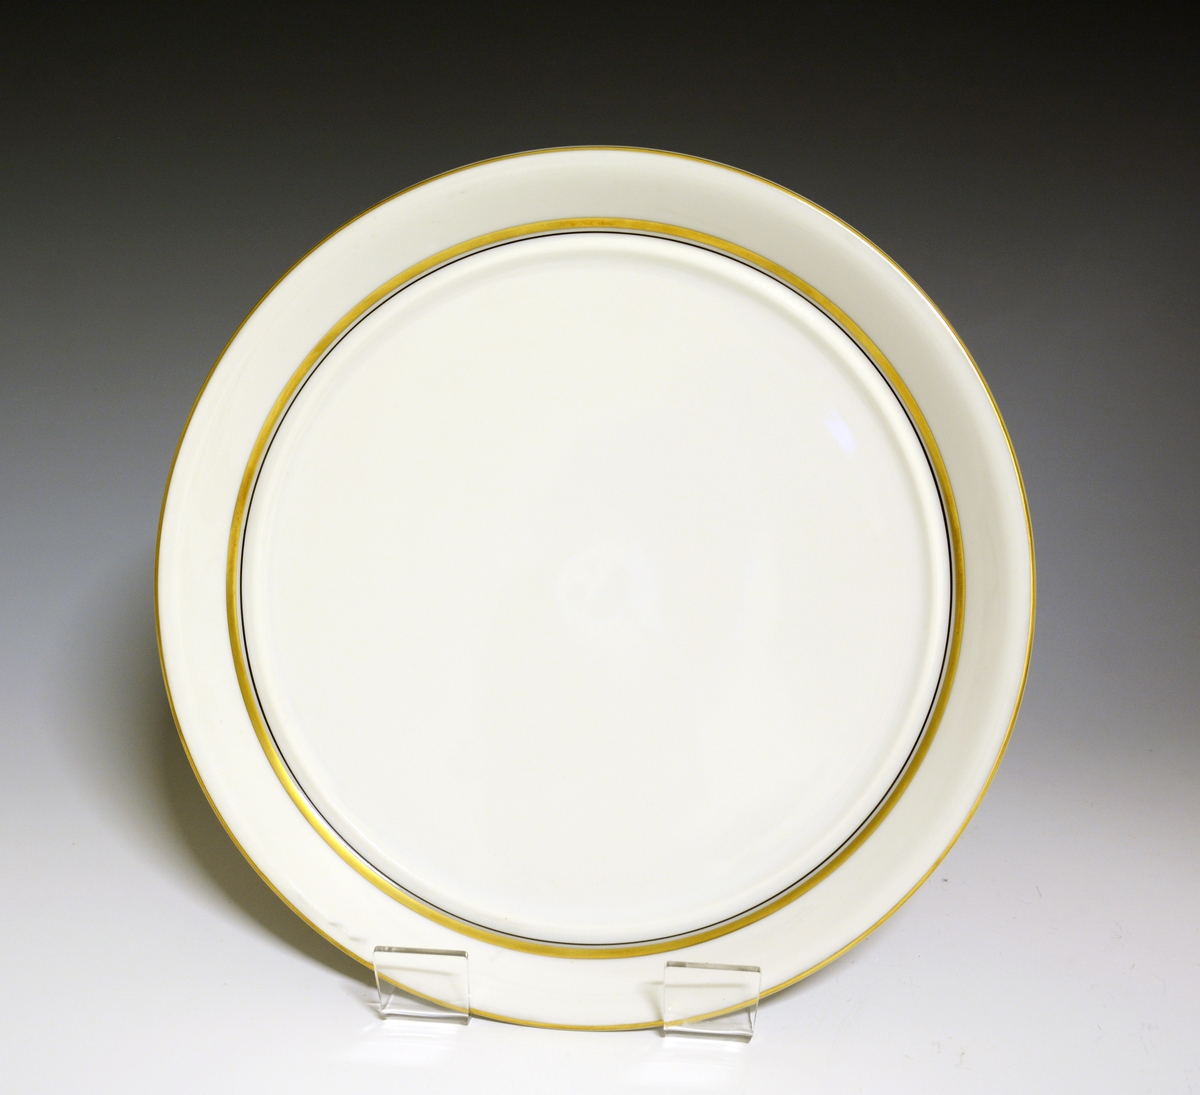 Tallerken av porselen med hvit glasur, gullstrek oppe og nede.
Modell: 2410 Marguerite. 
Dekor 50022 Spinett.